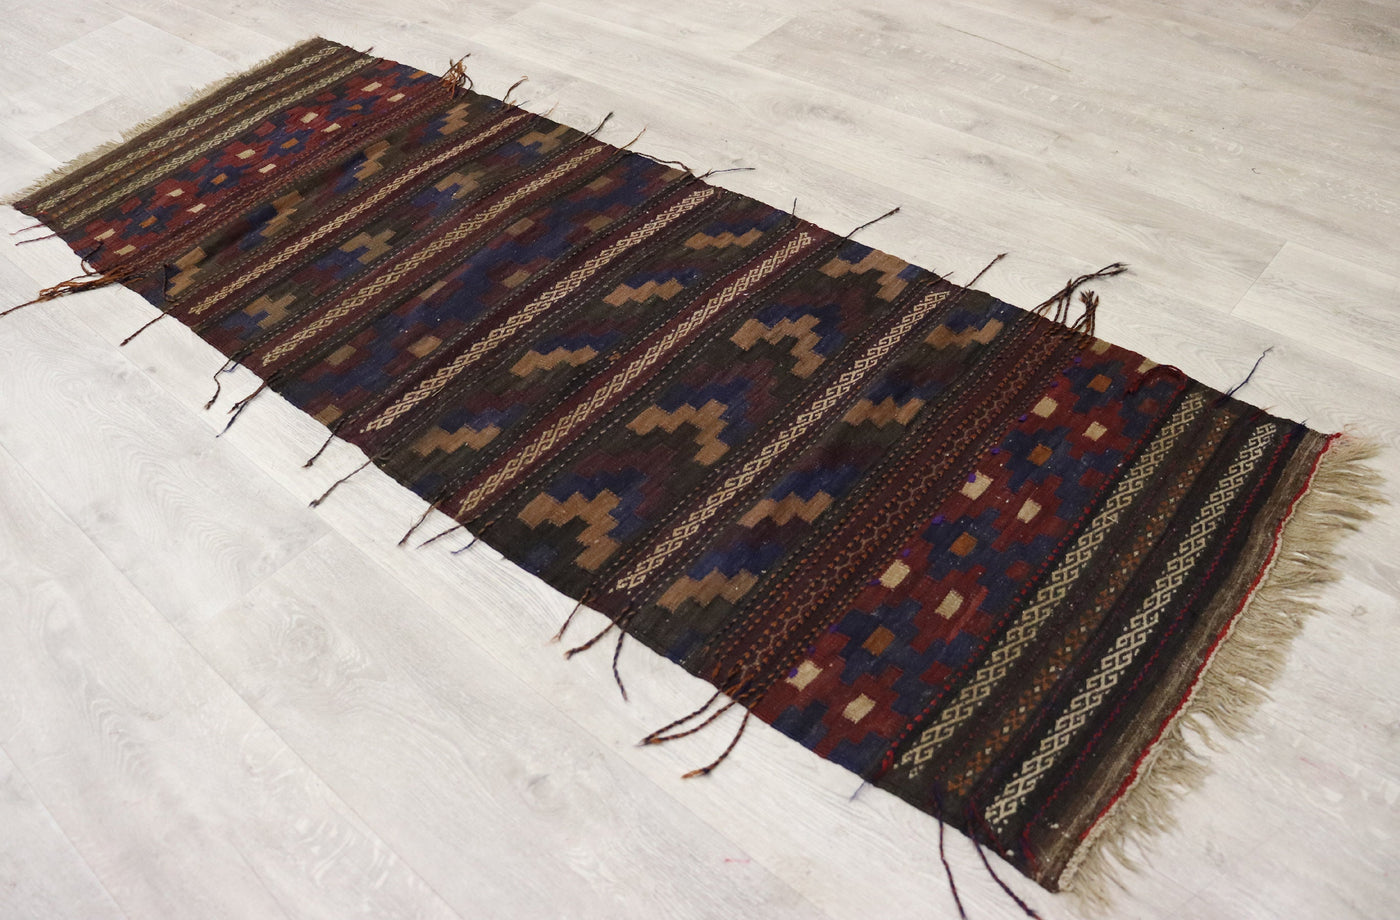 198x70 cm Antik orient handgewebte Teppich Nomaden Balouch sumakh kelim afghan Beloch Flur Läufer kilim Nr- 22D Teppiche Orientsbazar   